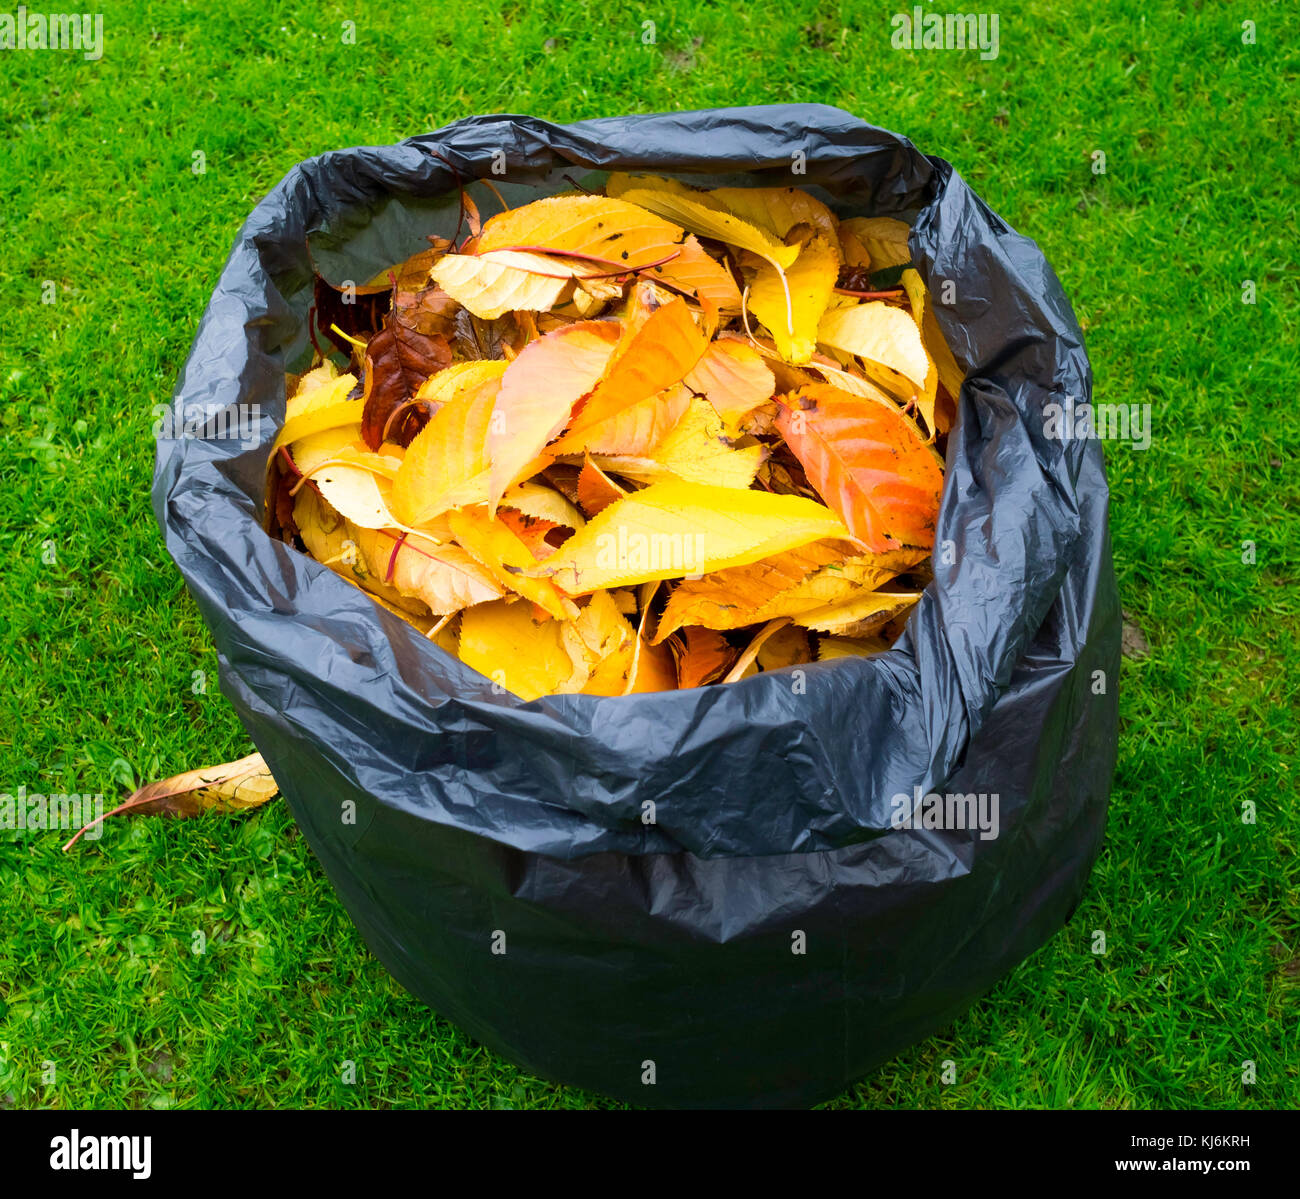 Una bolsa de plástico llena de negros muertos hojas de otoño, que se descomponen en la bolsa formando un molde de hoja útil fertilizante de jardín Foto de stock